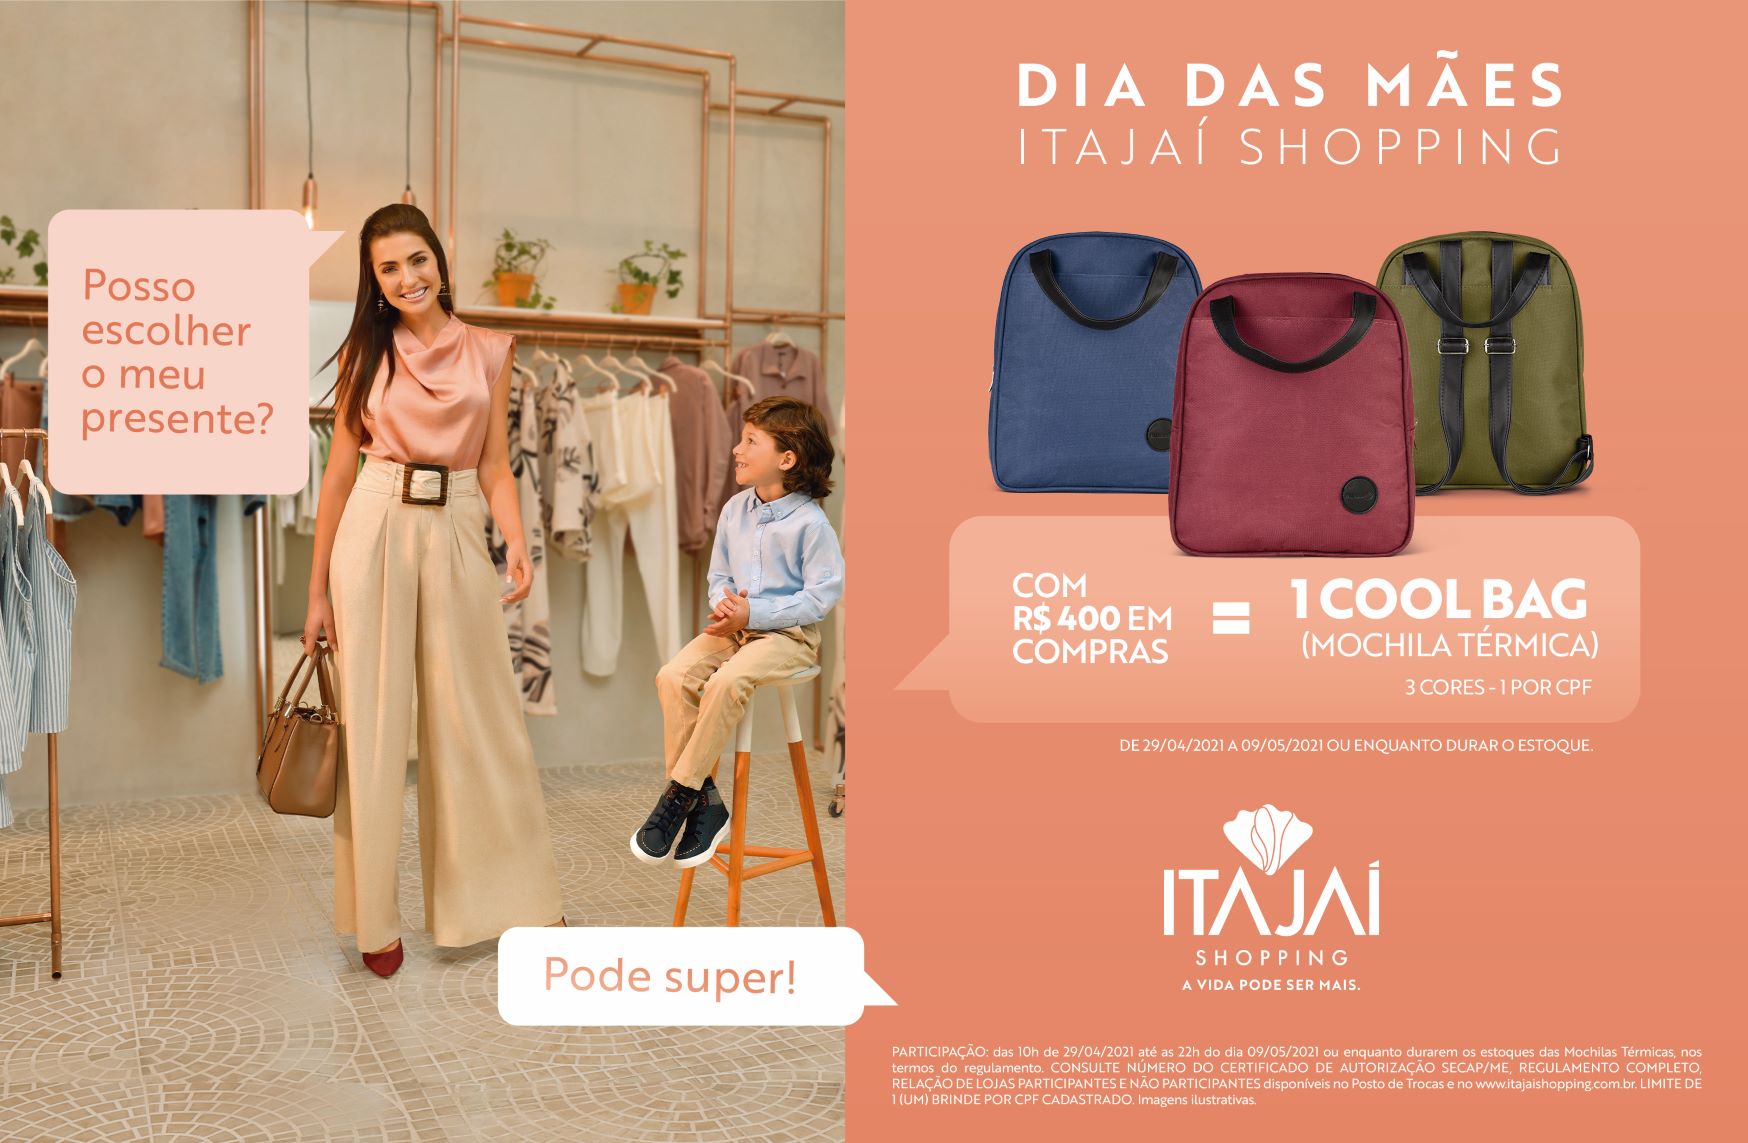 Dia das Mães:  Itajaí Shopping presenteia clientes com cool bag exclusiva